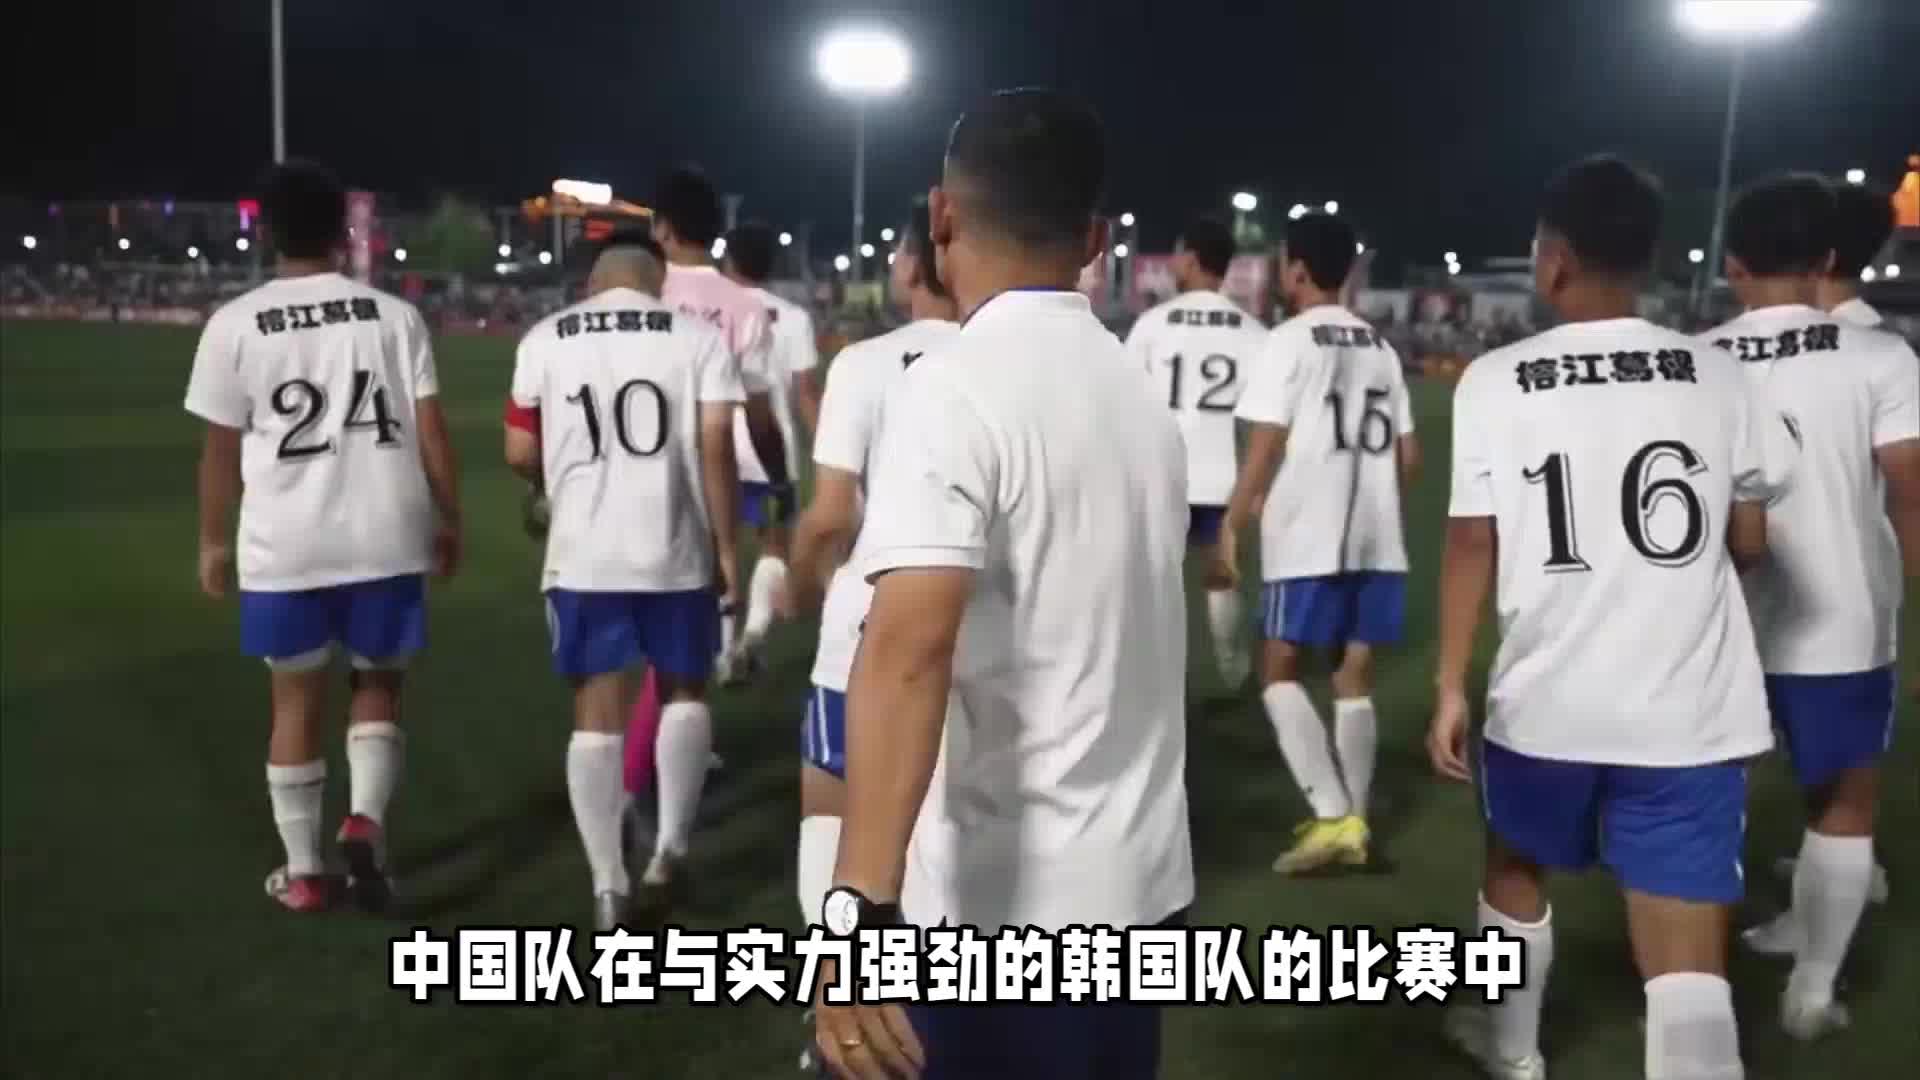 中国队惨败韩国!球迷狂喜,扬科维奇妙计大揭秘